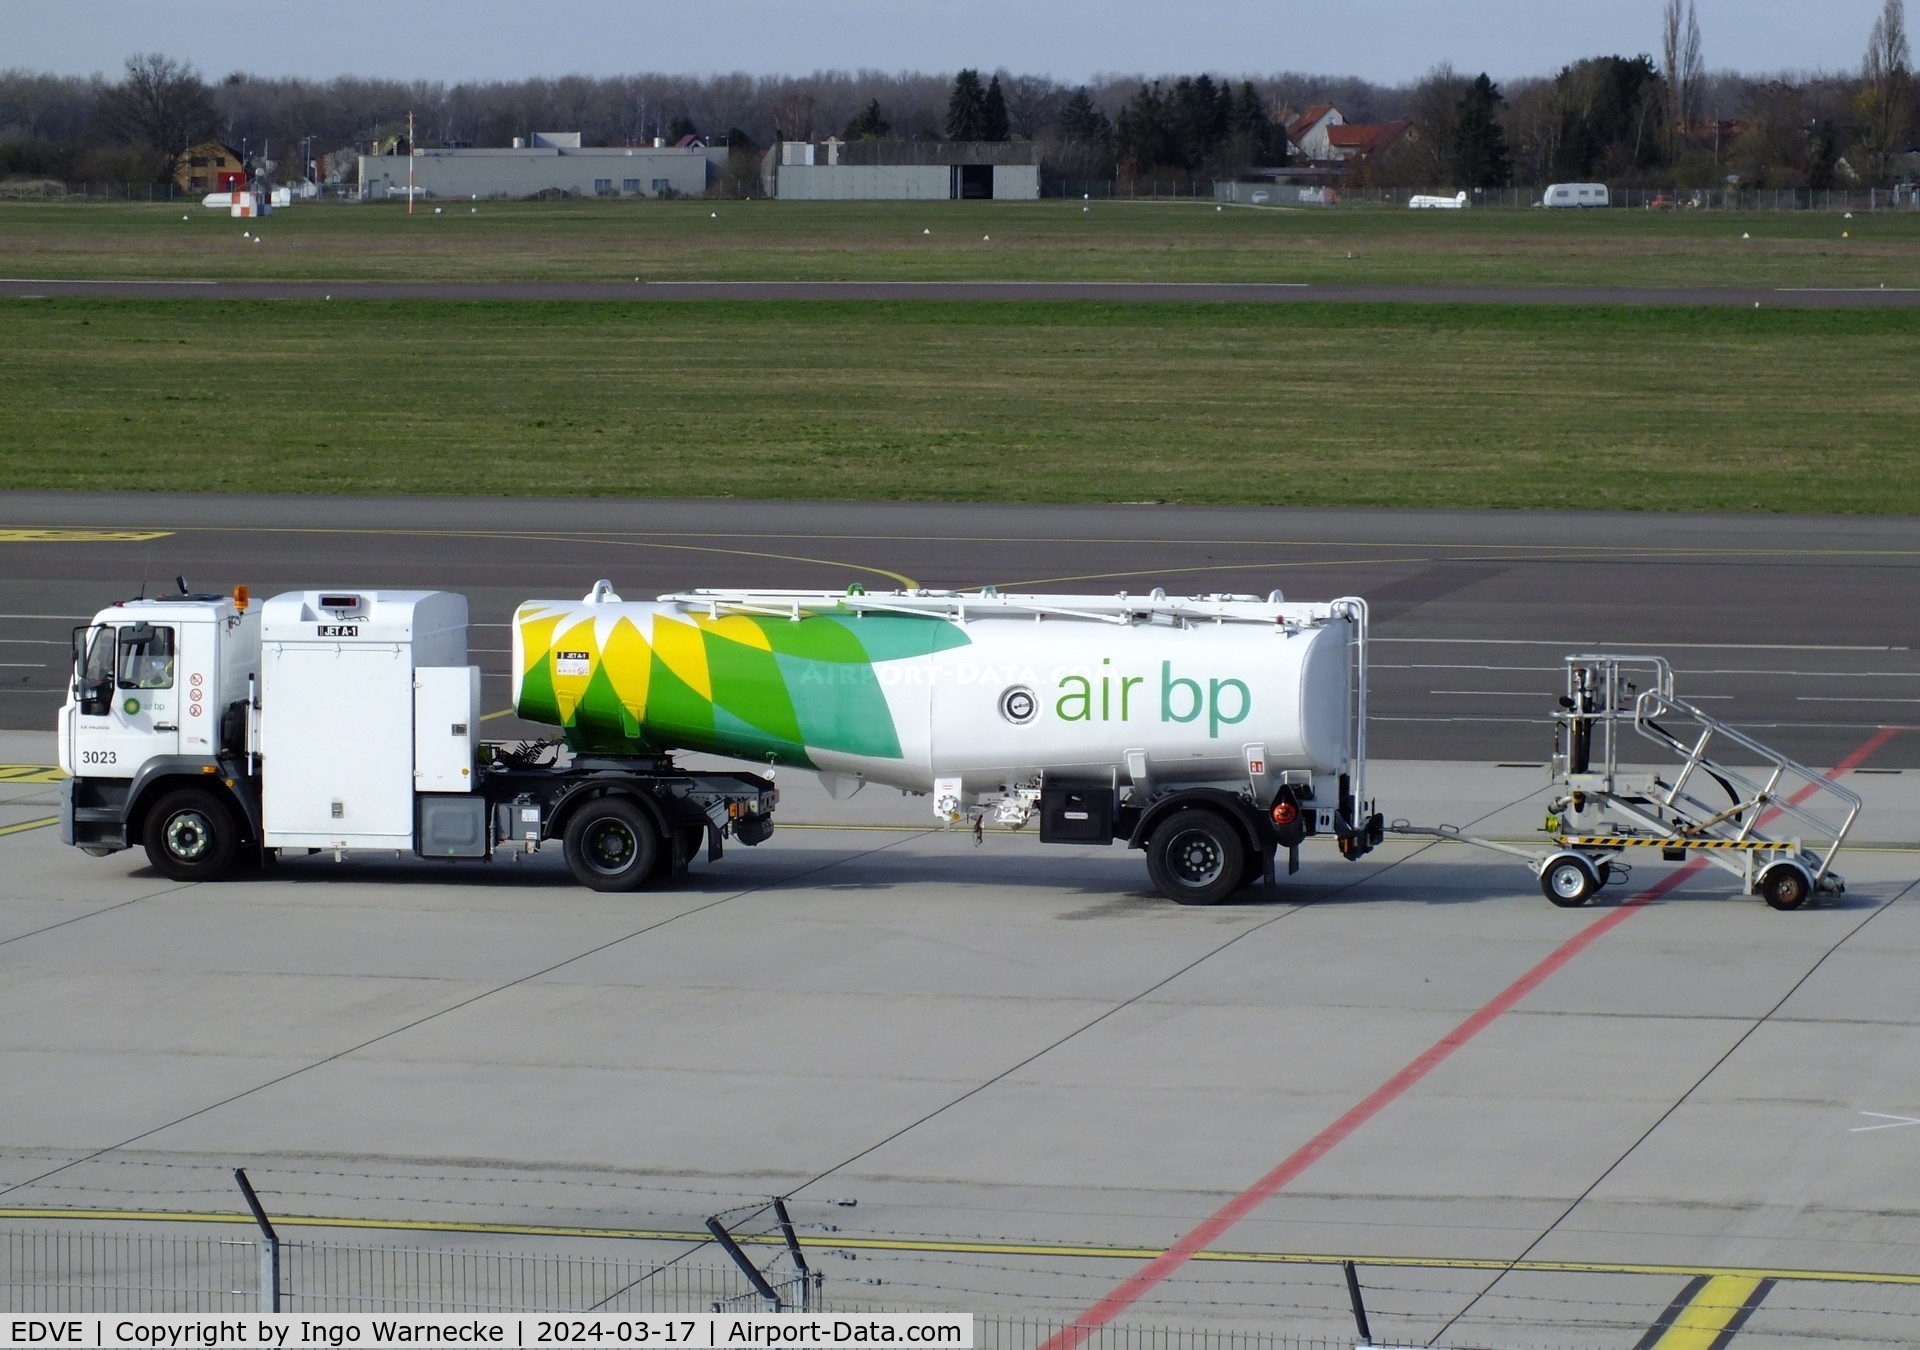 Braunschweig-Wolfsburg Regional Airport, Braunschweig, Lower Saxony Germany (EDVE) - airport fuel truck at Braunschweig/Wolfsburg airport, BS/Waggum